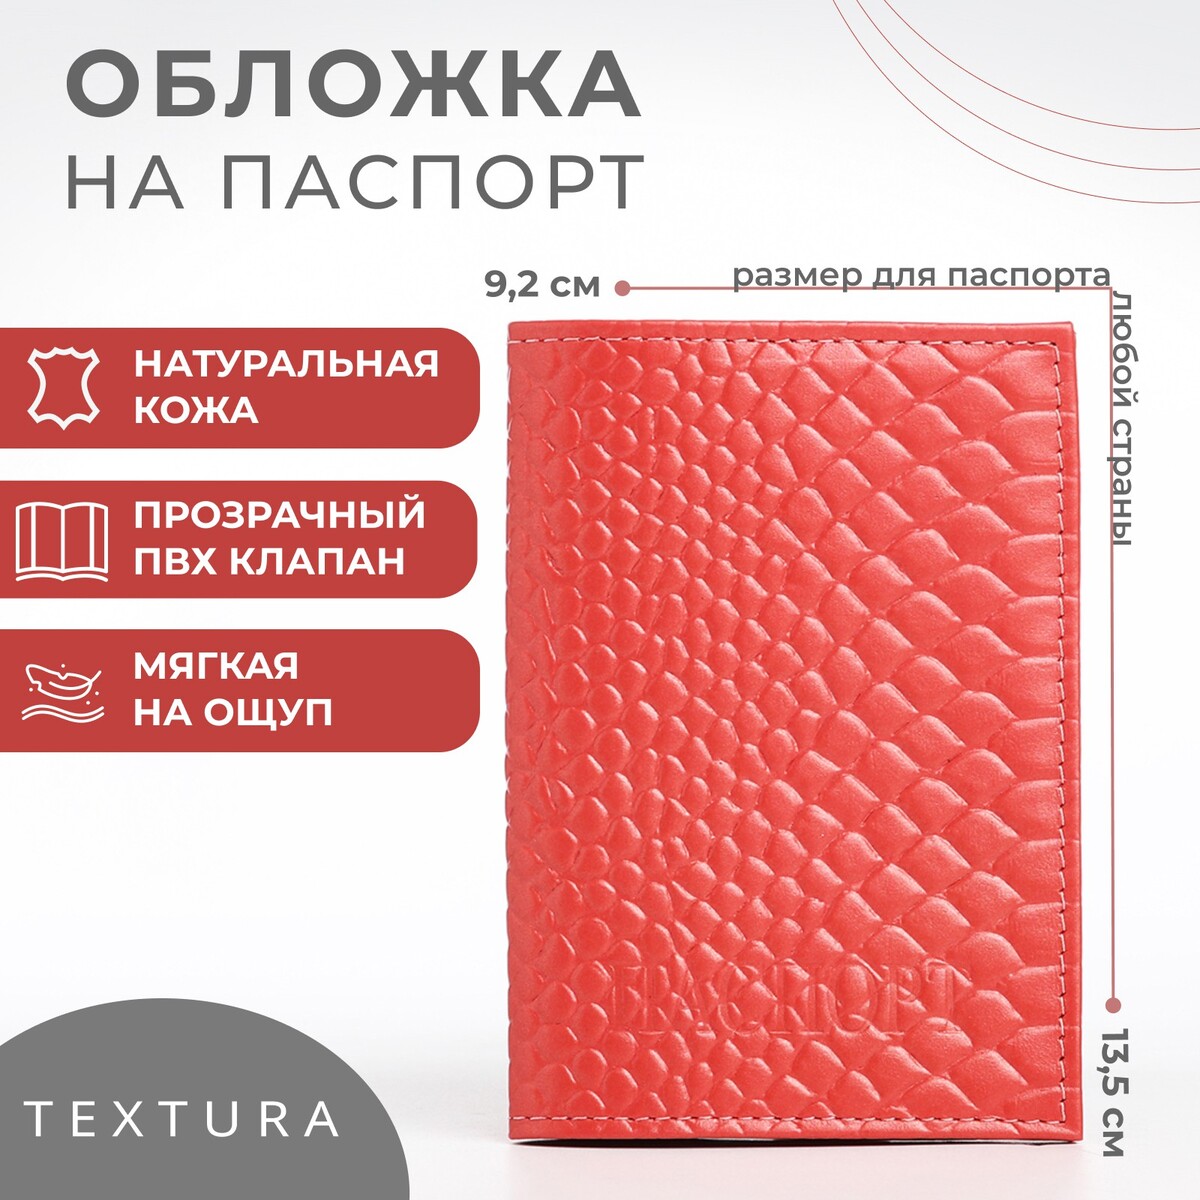 Обложка для паспорта textura, цвет чайной розы TEXTURA